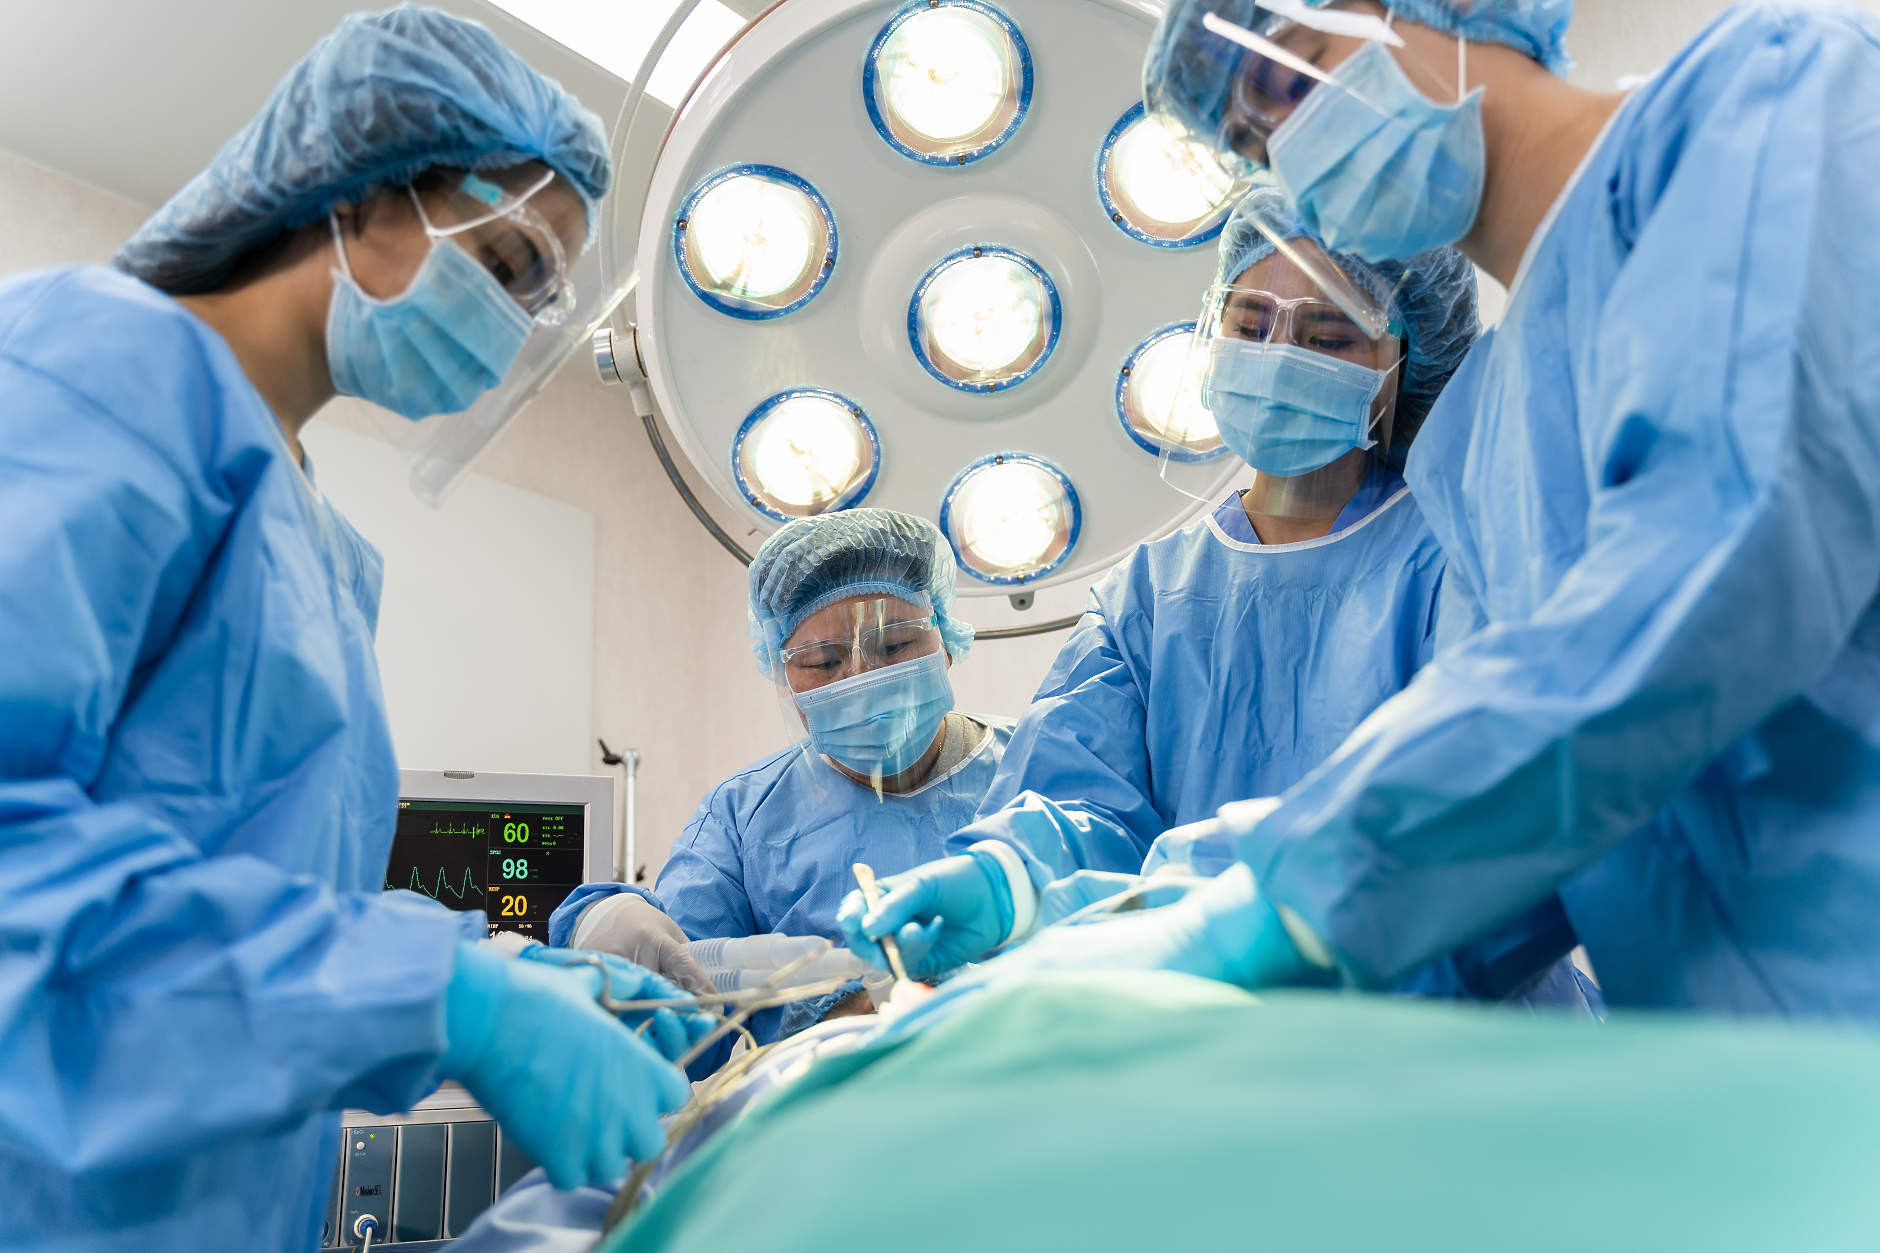 Операцията на катаракта и цезаровото сечение са най-честите хирургически процедури в ЕС